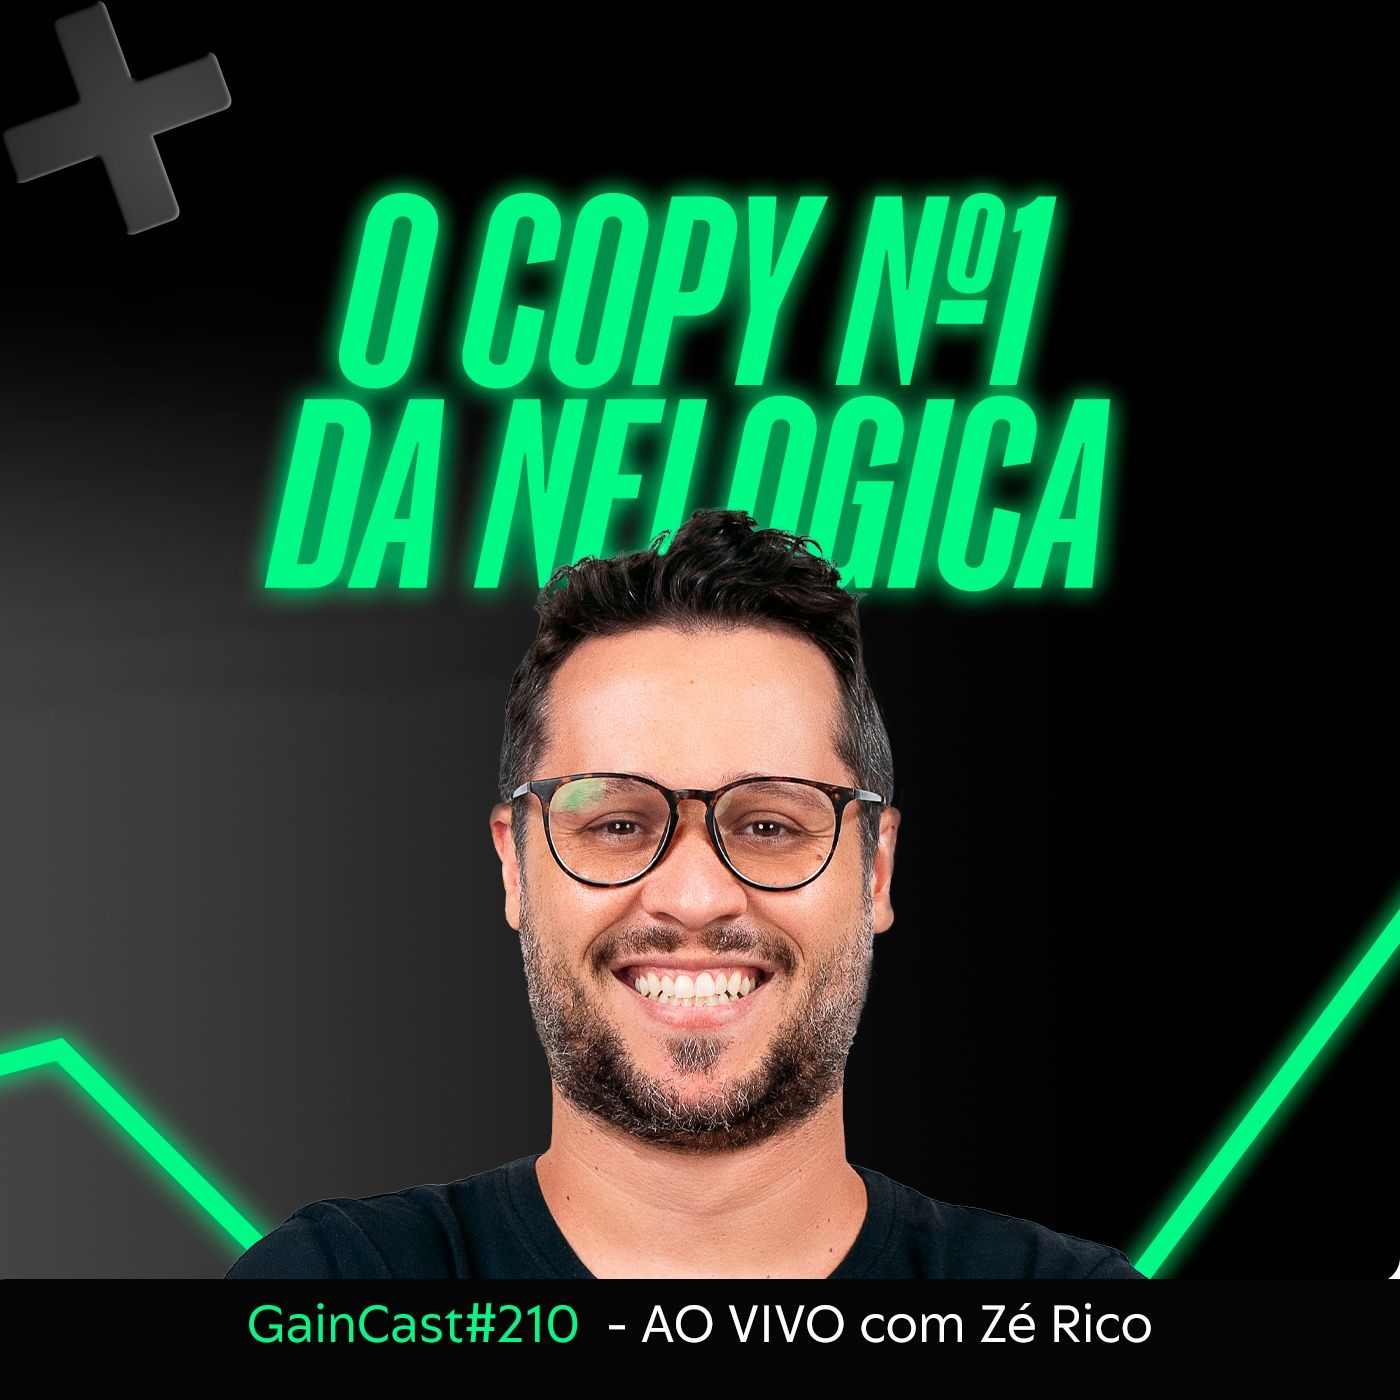 Zé Rico e o Copy Trade número 1 da Nelogica | GainCast#210